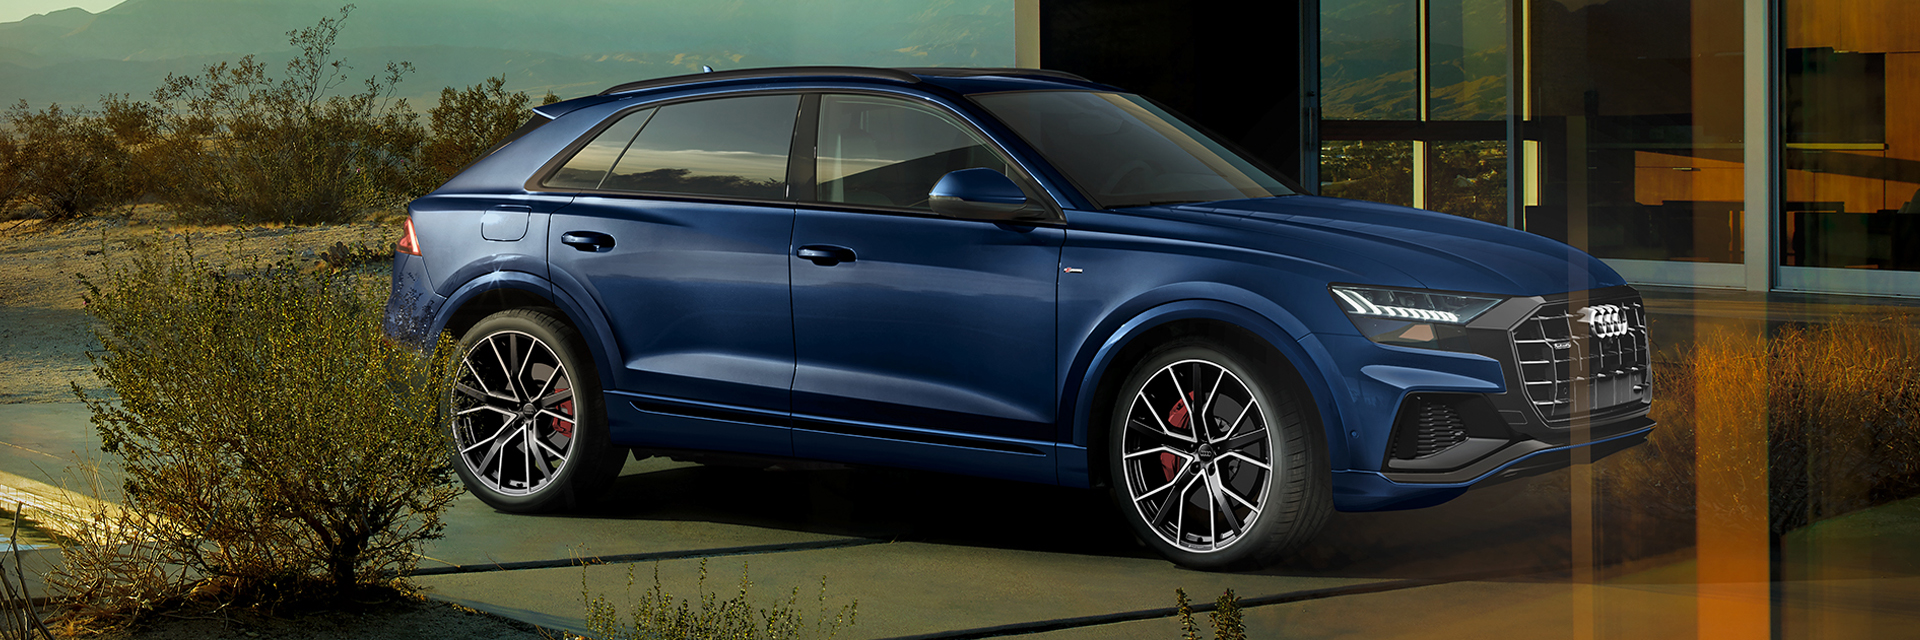 Audi Q8 - carros novos, carros km0, carros serviço, carros usados